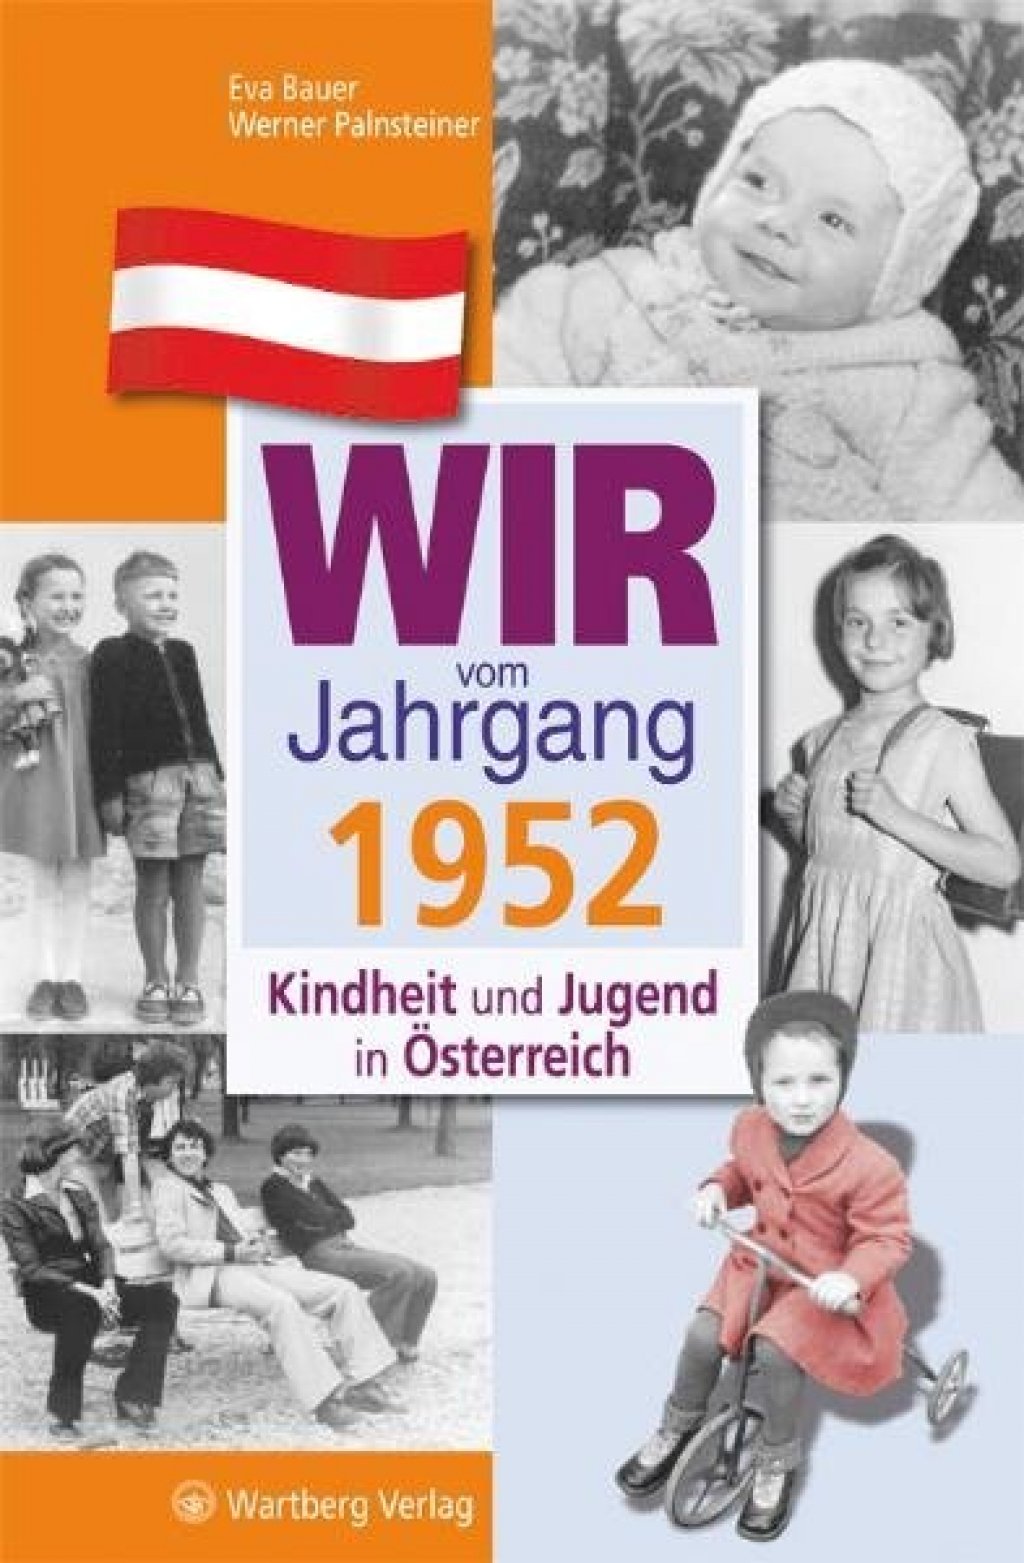 Wir vom Jahrgang 1952 - Kindheit und Jugend in Österreich